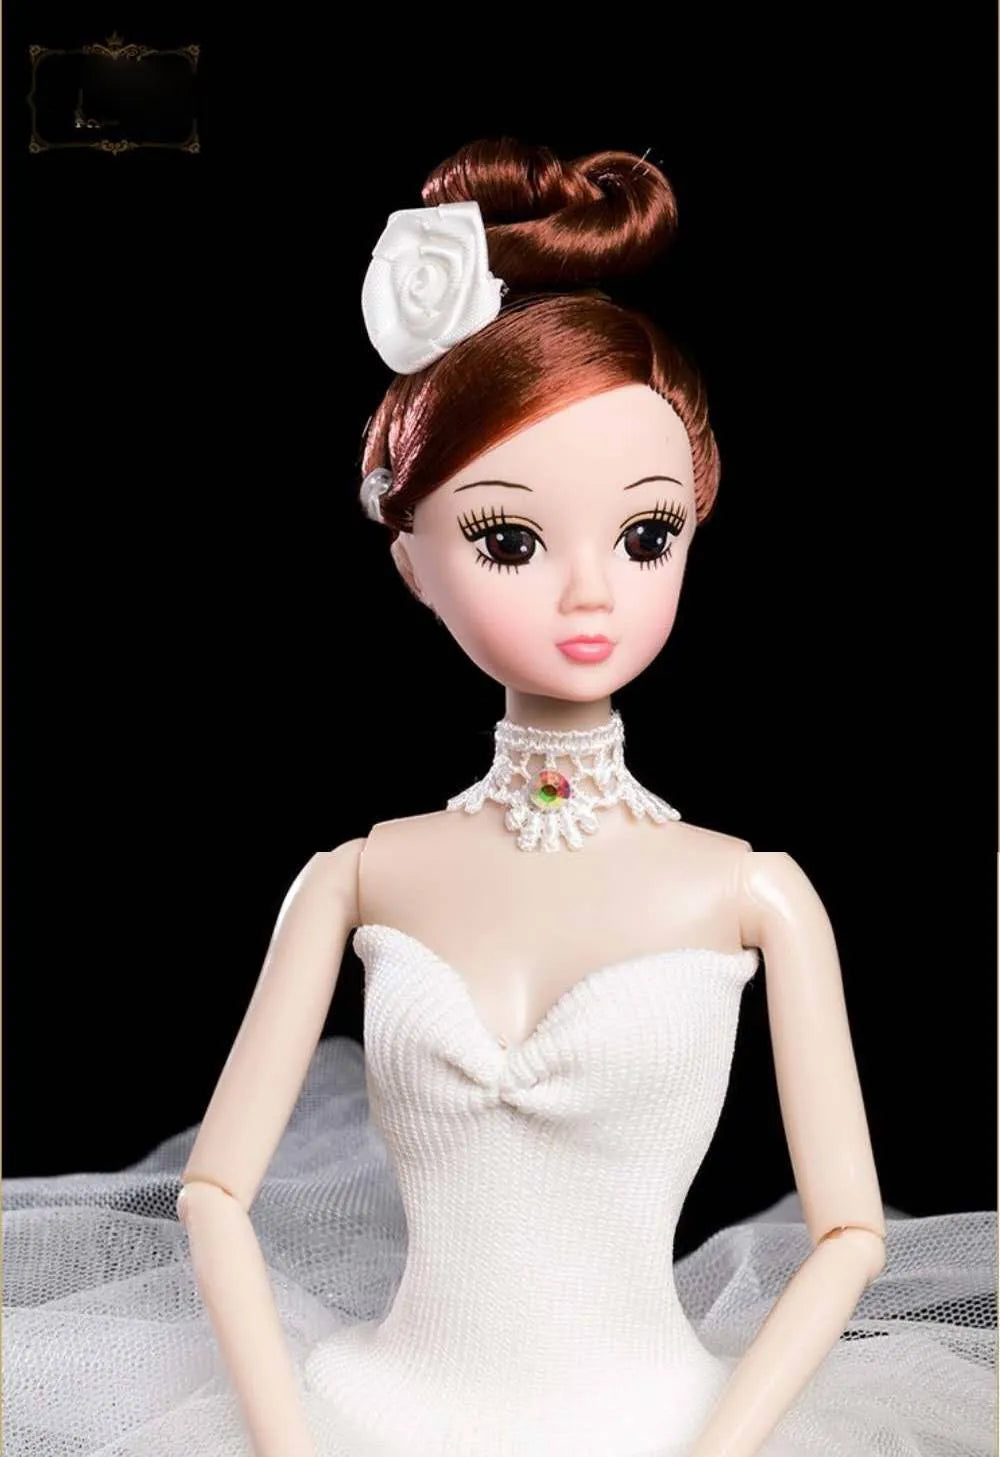 Vorderseite der Ballerina-Puppe mit weißem Tutu